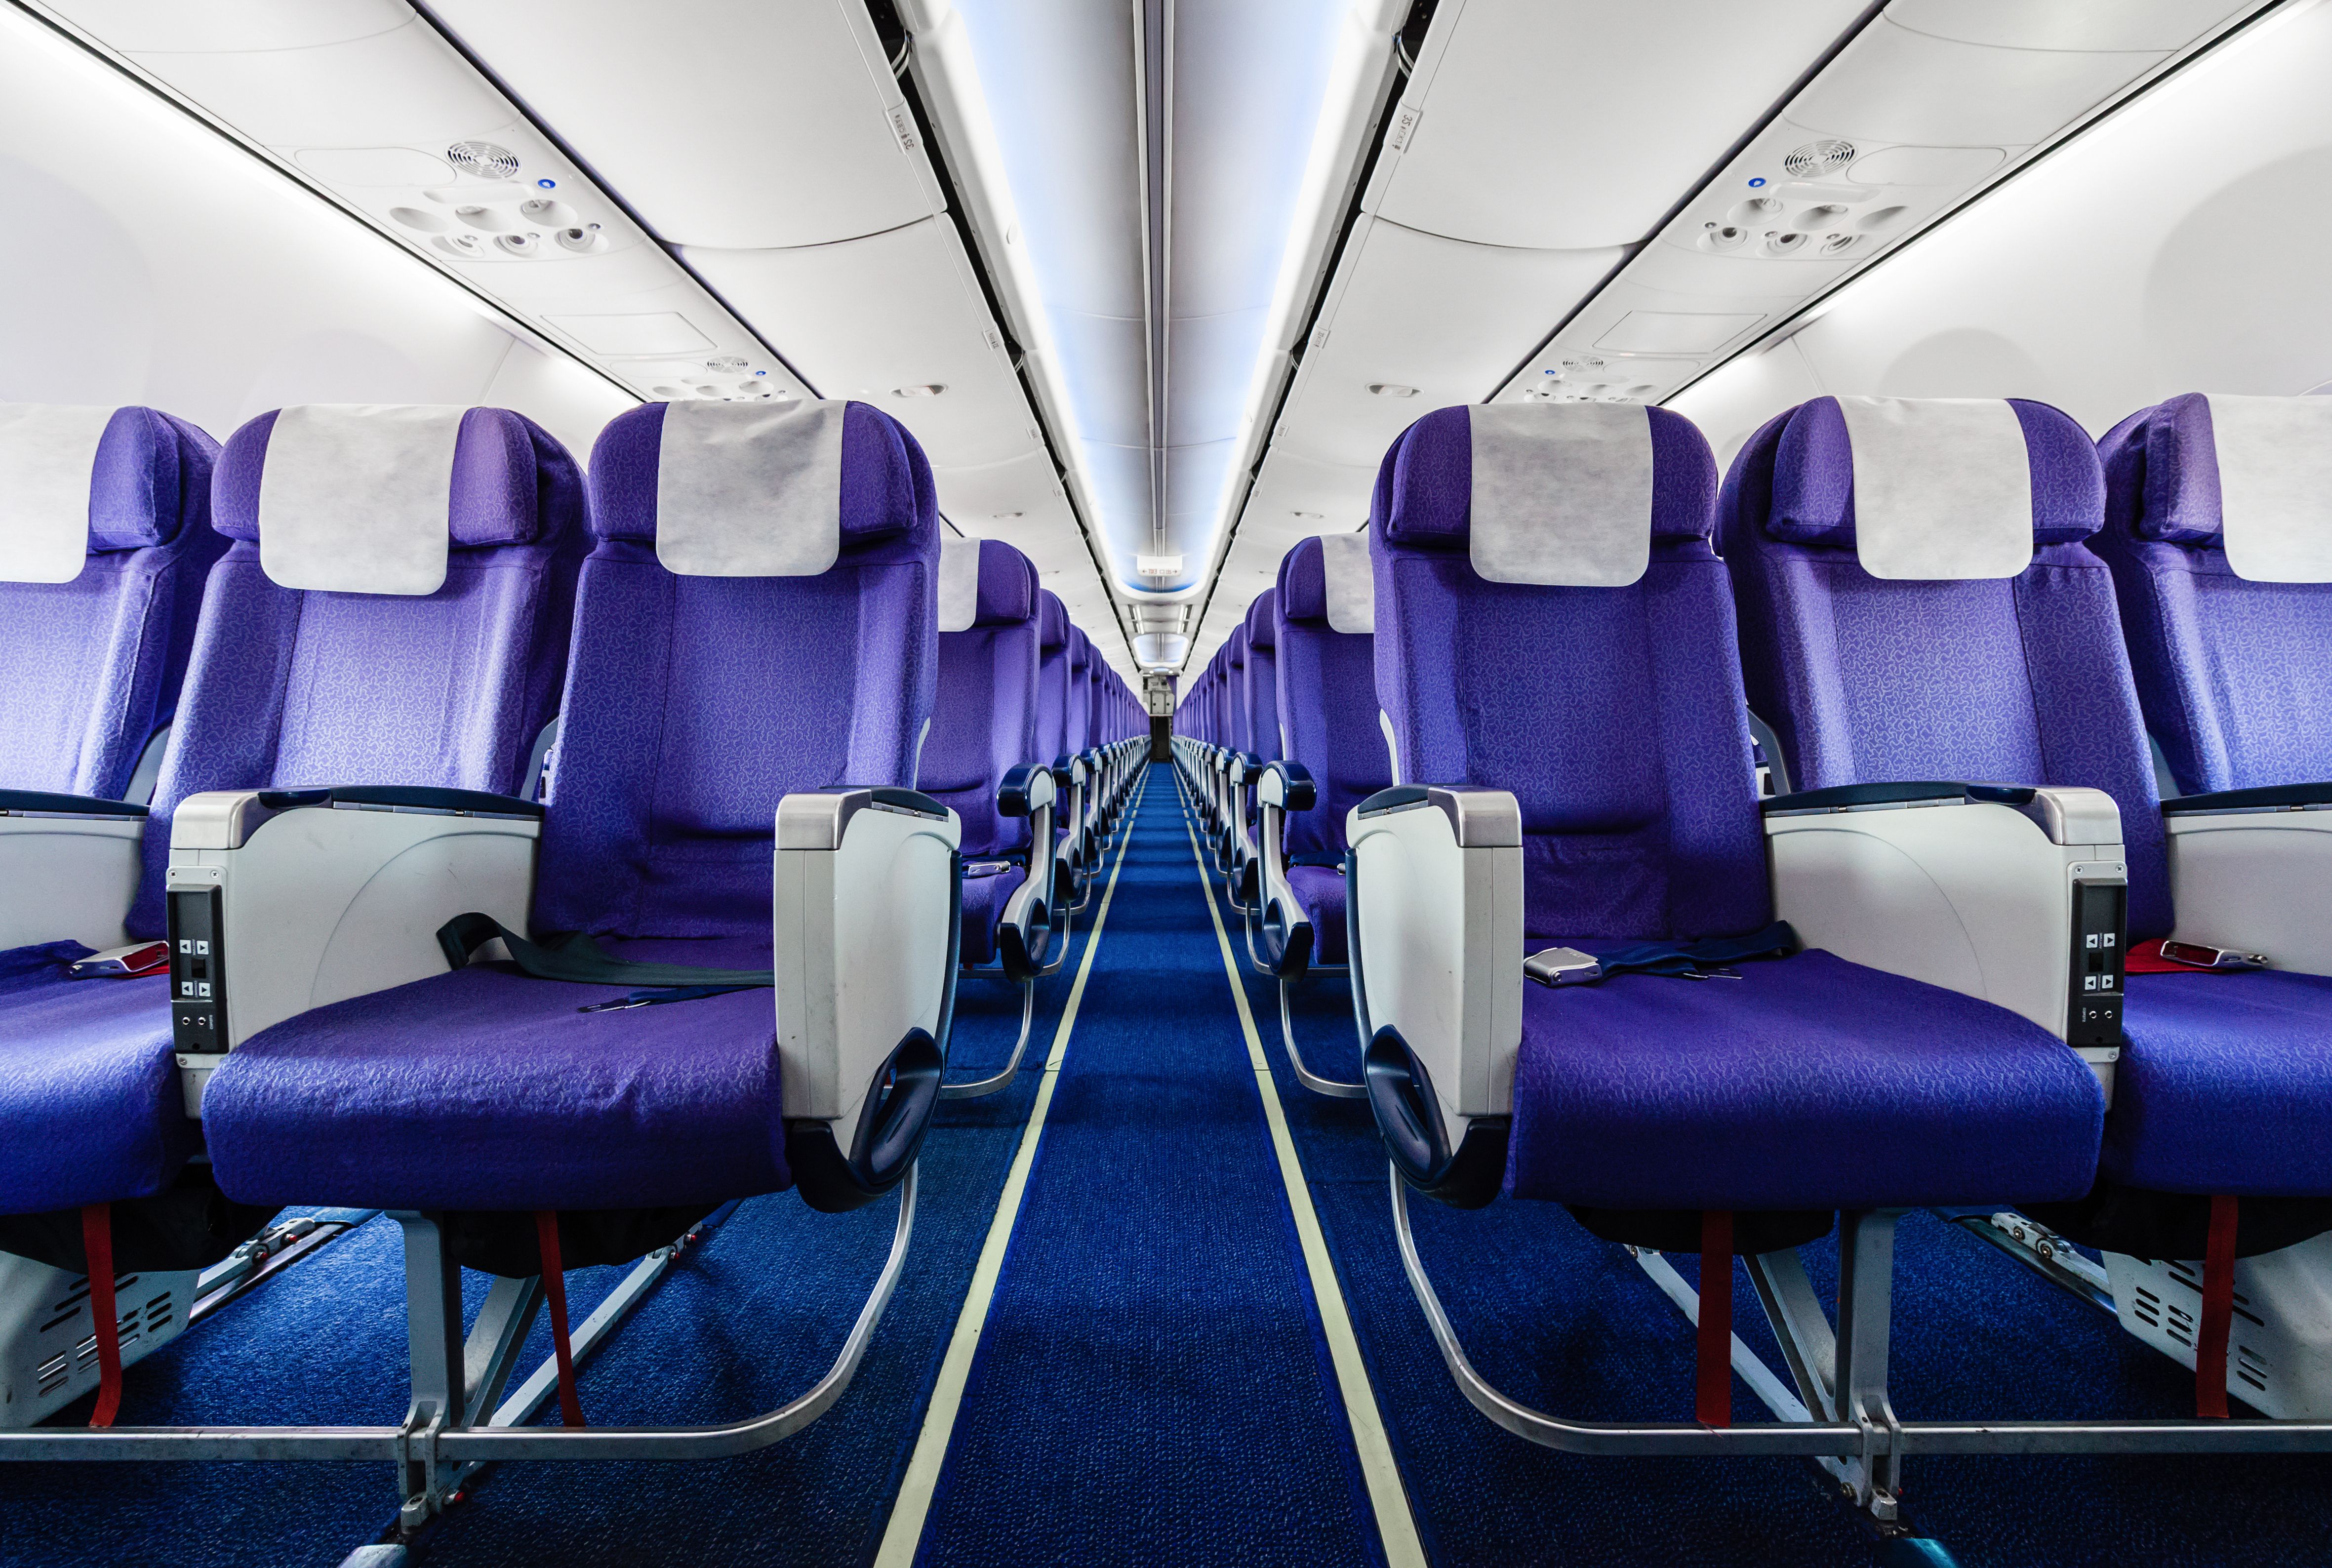 Several rows of aircraft seats.